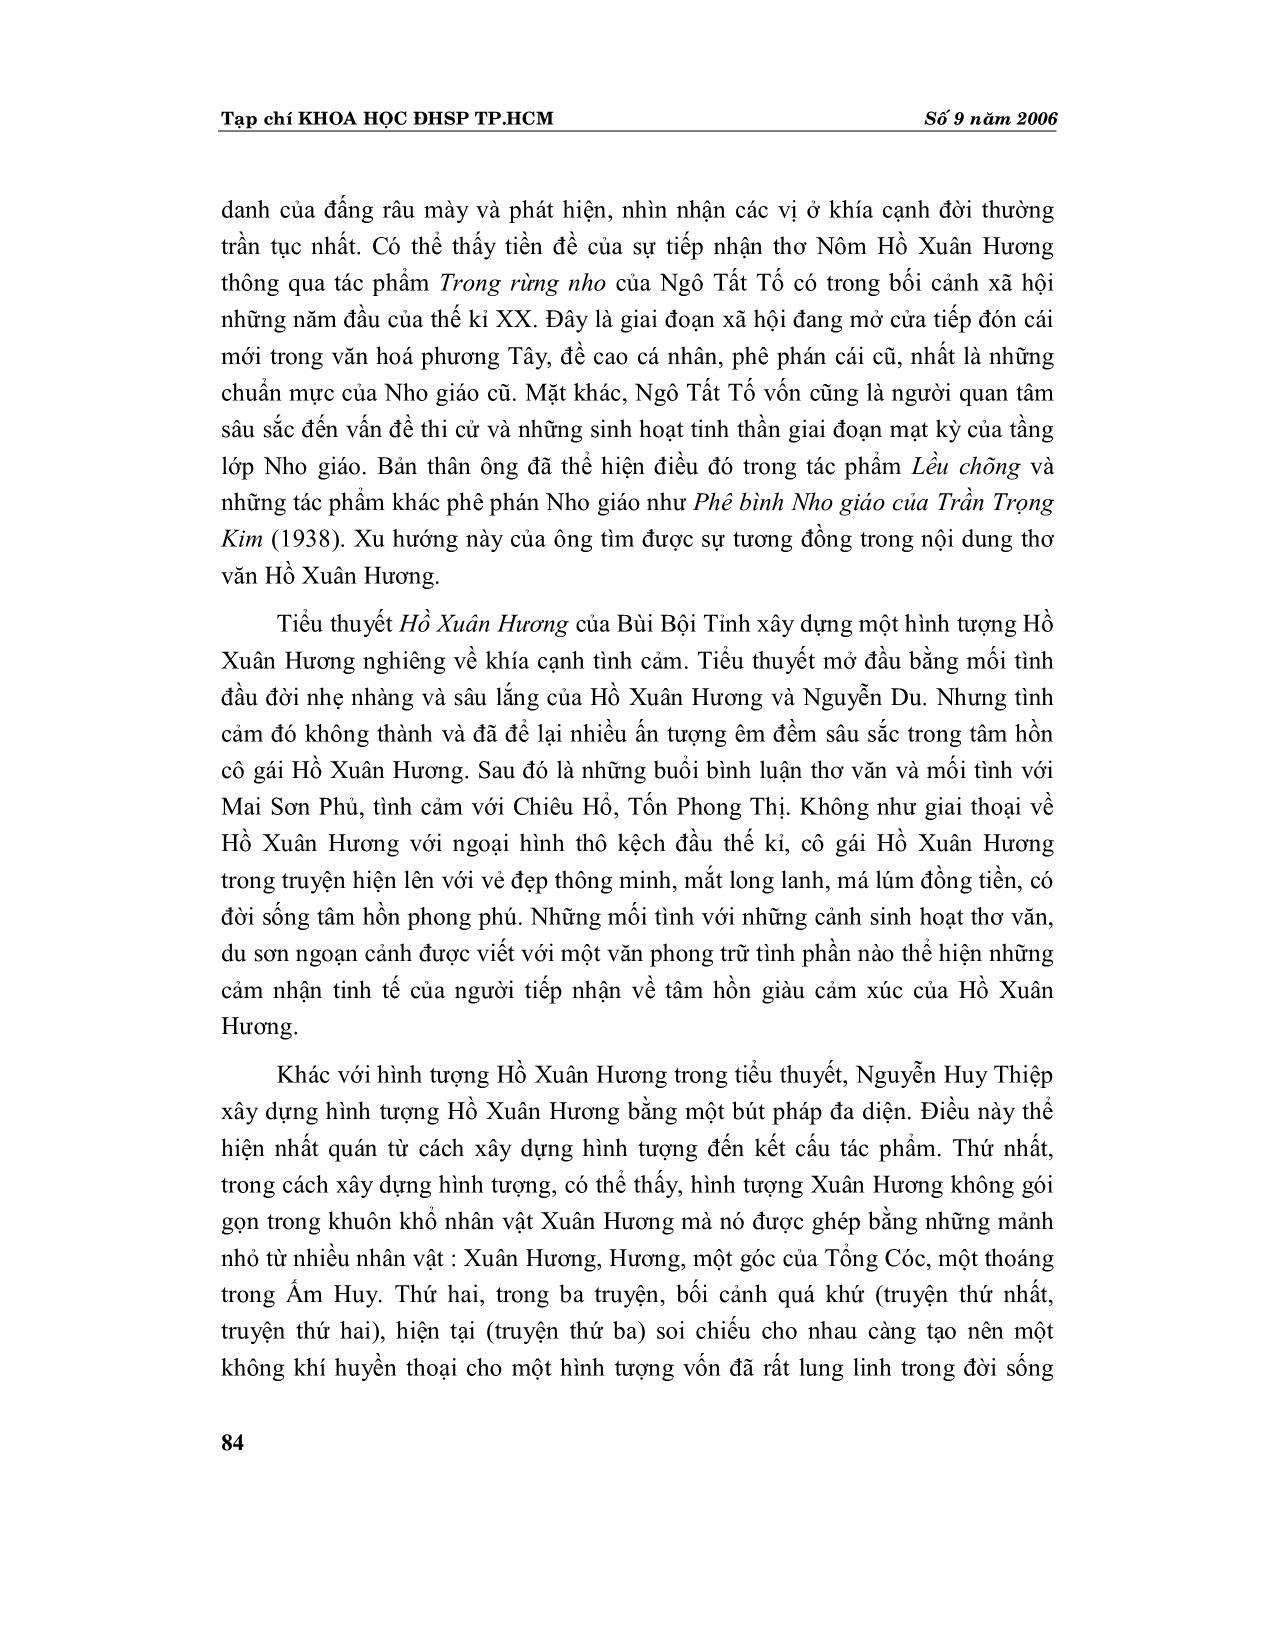 Tiếp nhận thơ Nôm Hồ Xuân Hương trong sáng tác nghệ thuật (Tiểu thuyết, truyện ngắn, hội hoạ) trang 3